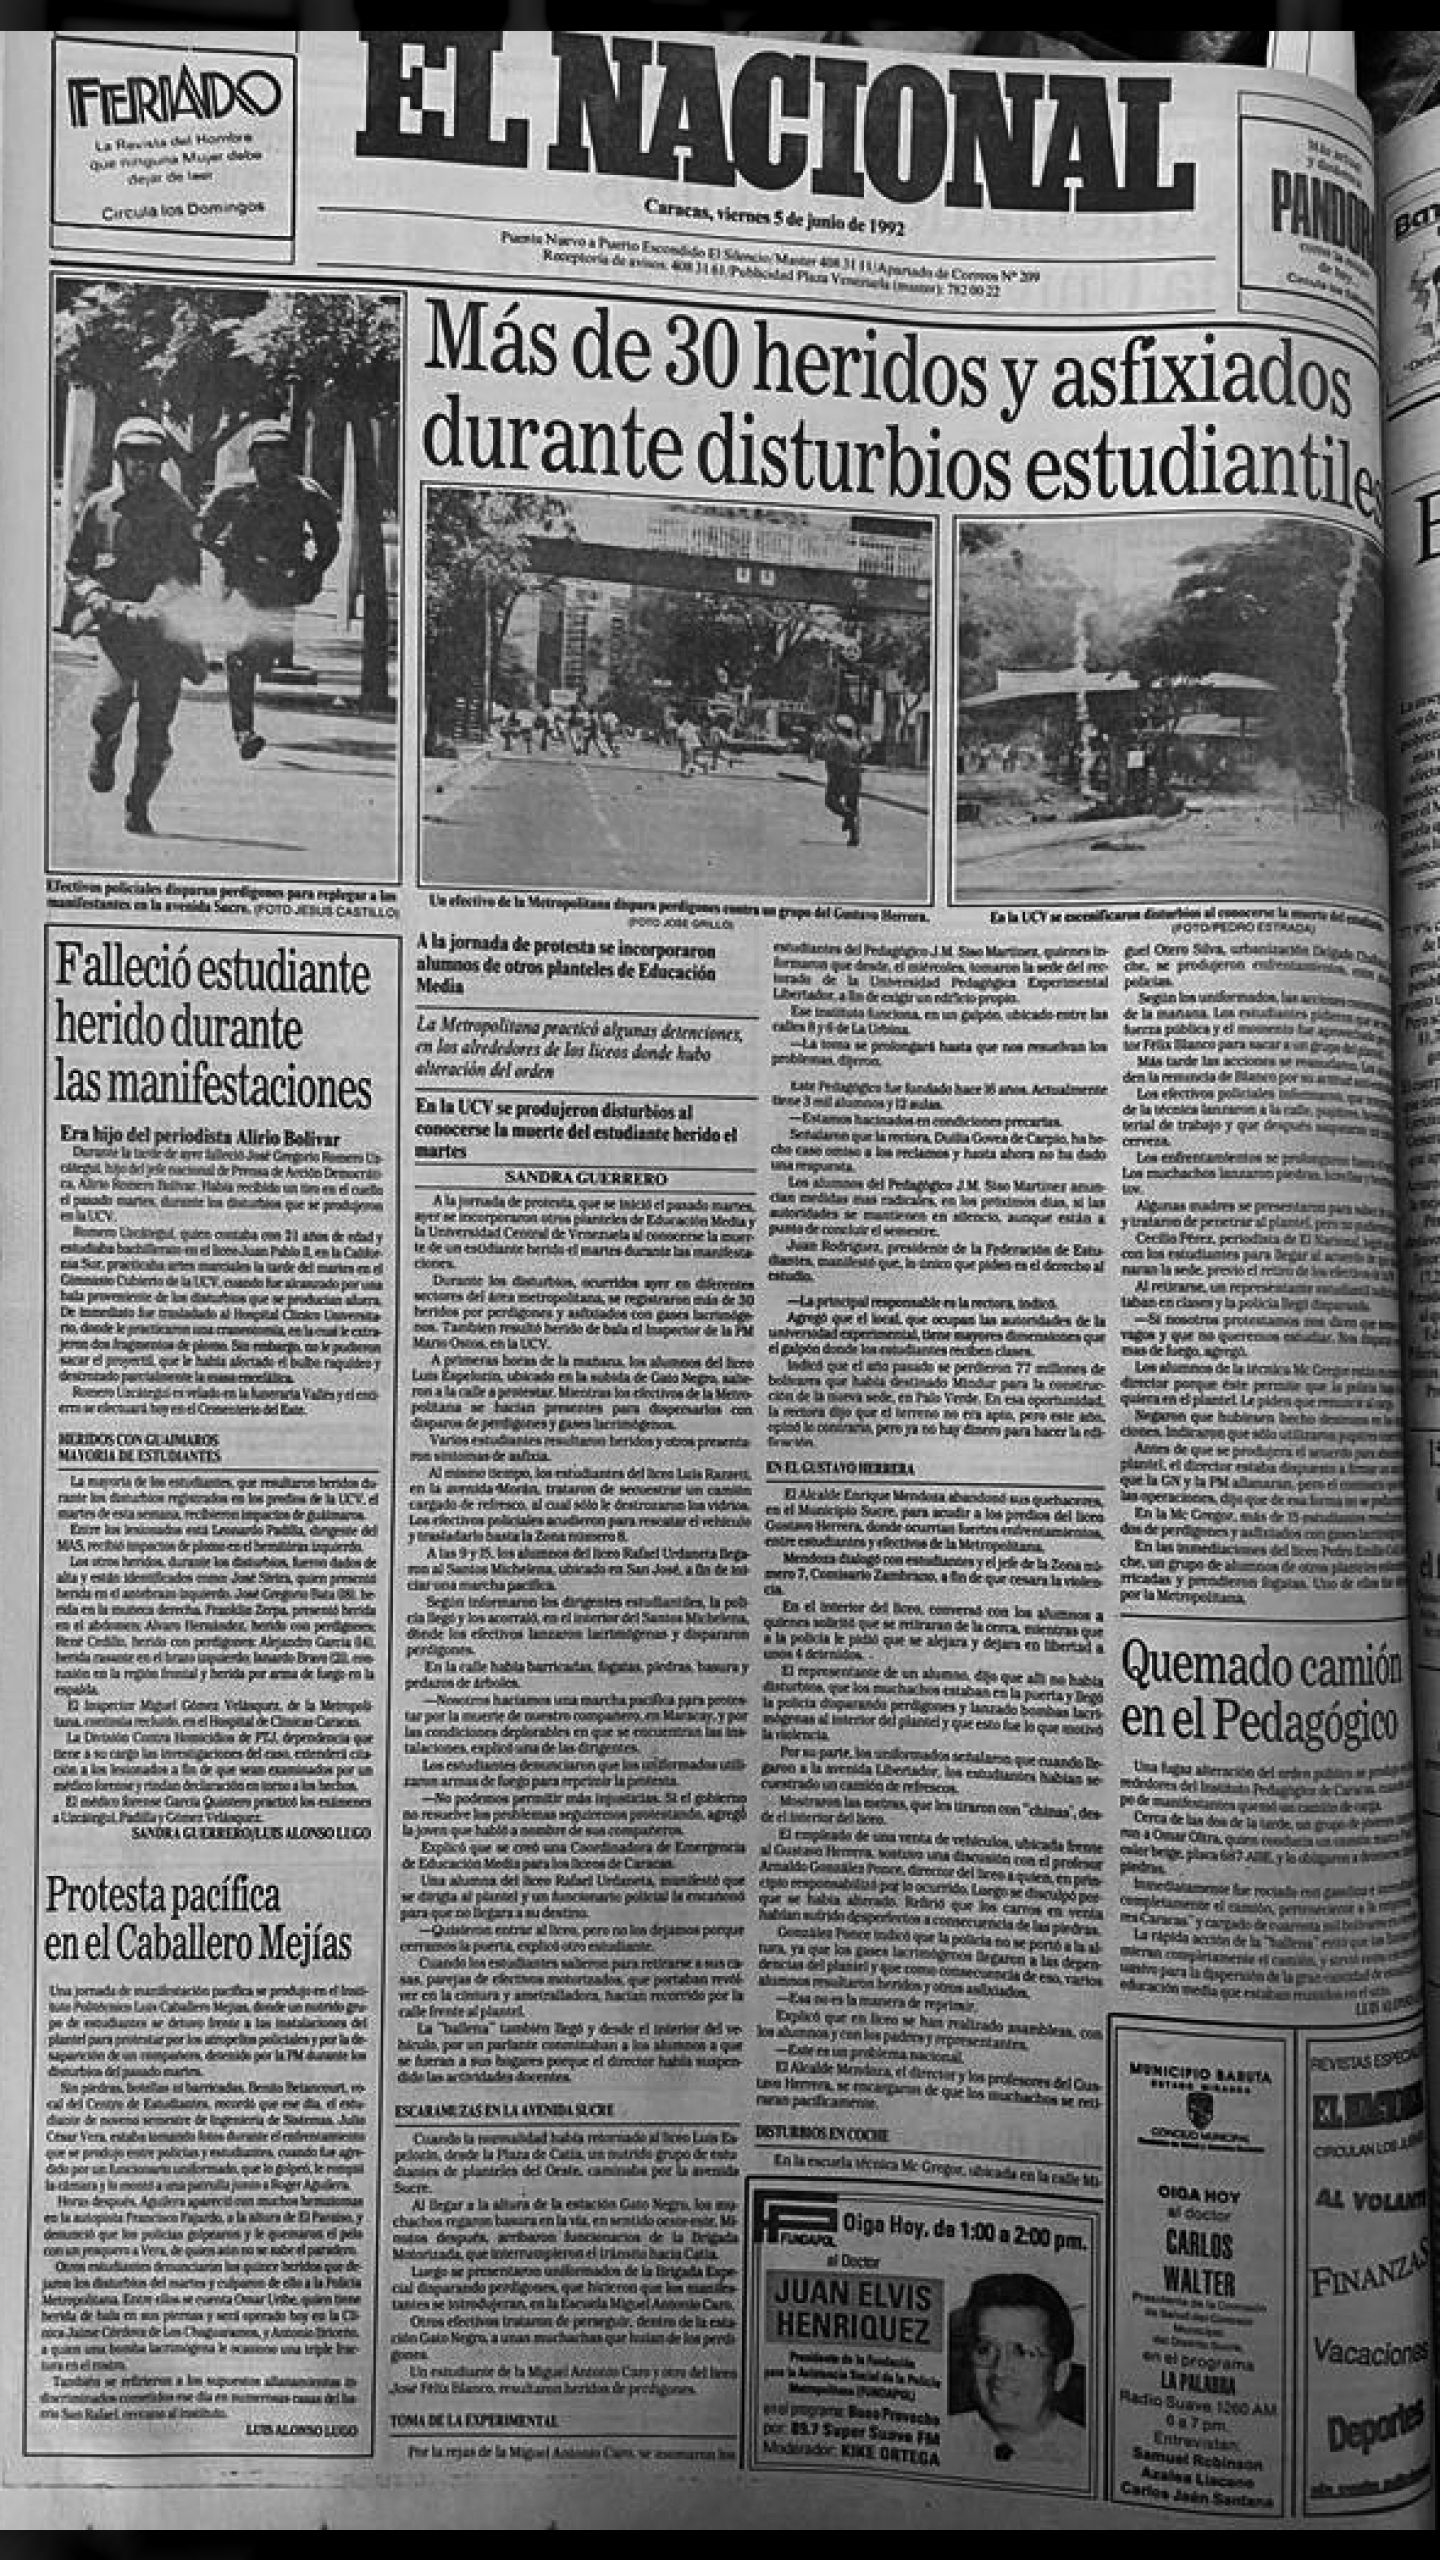 Más de 30 heridos y asfixiados durante disturbios estudiantiles (El Nacional, 5 de junio de 1992)